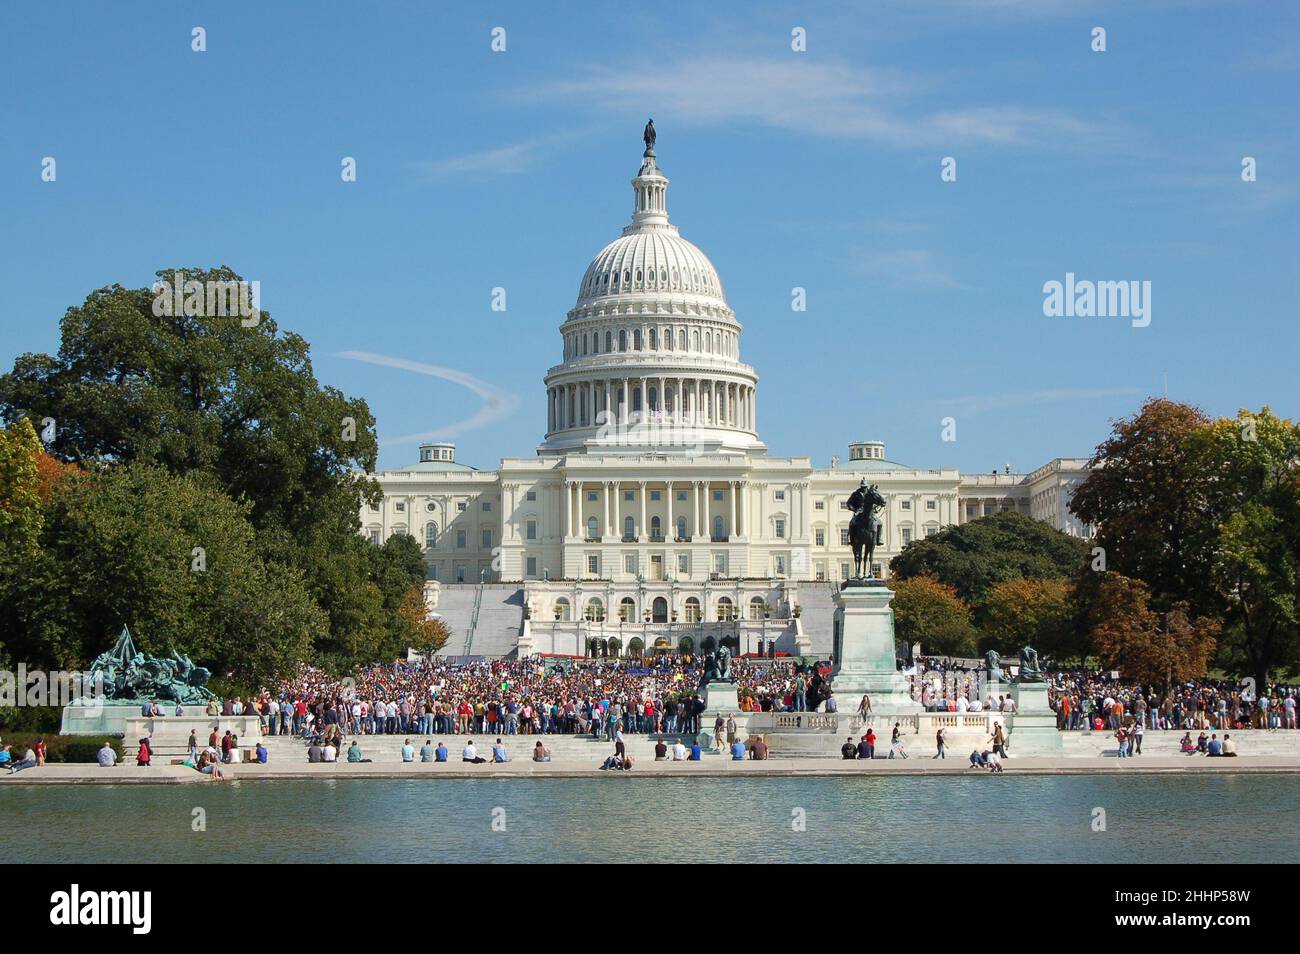 The United States Capitol, Washington D.C. Stock Photo